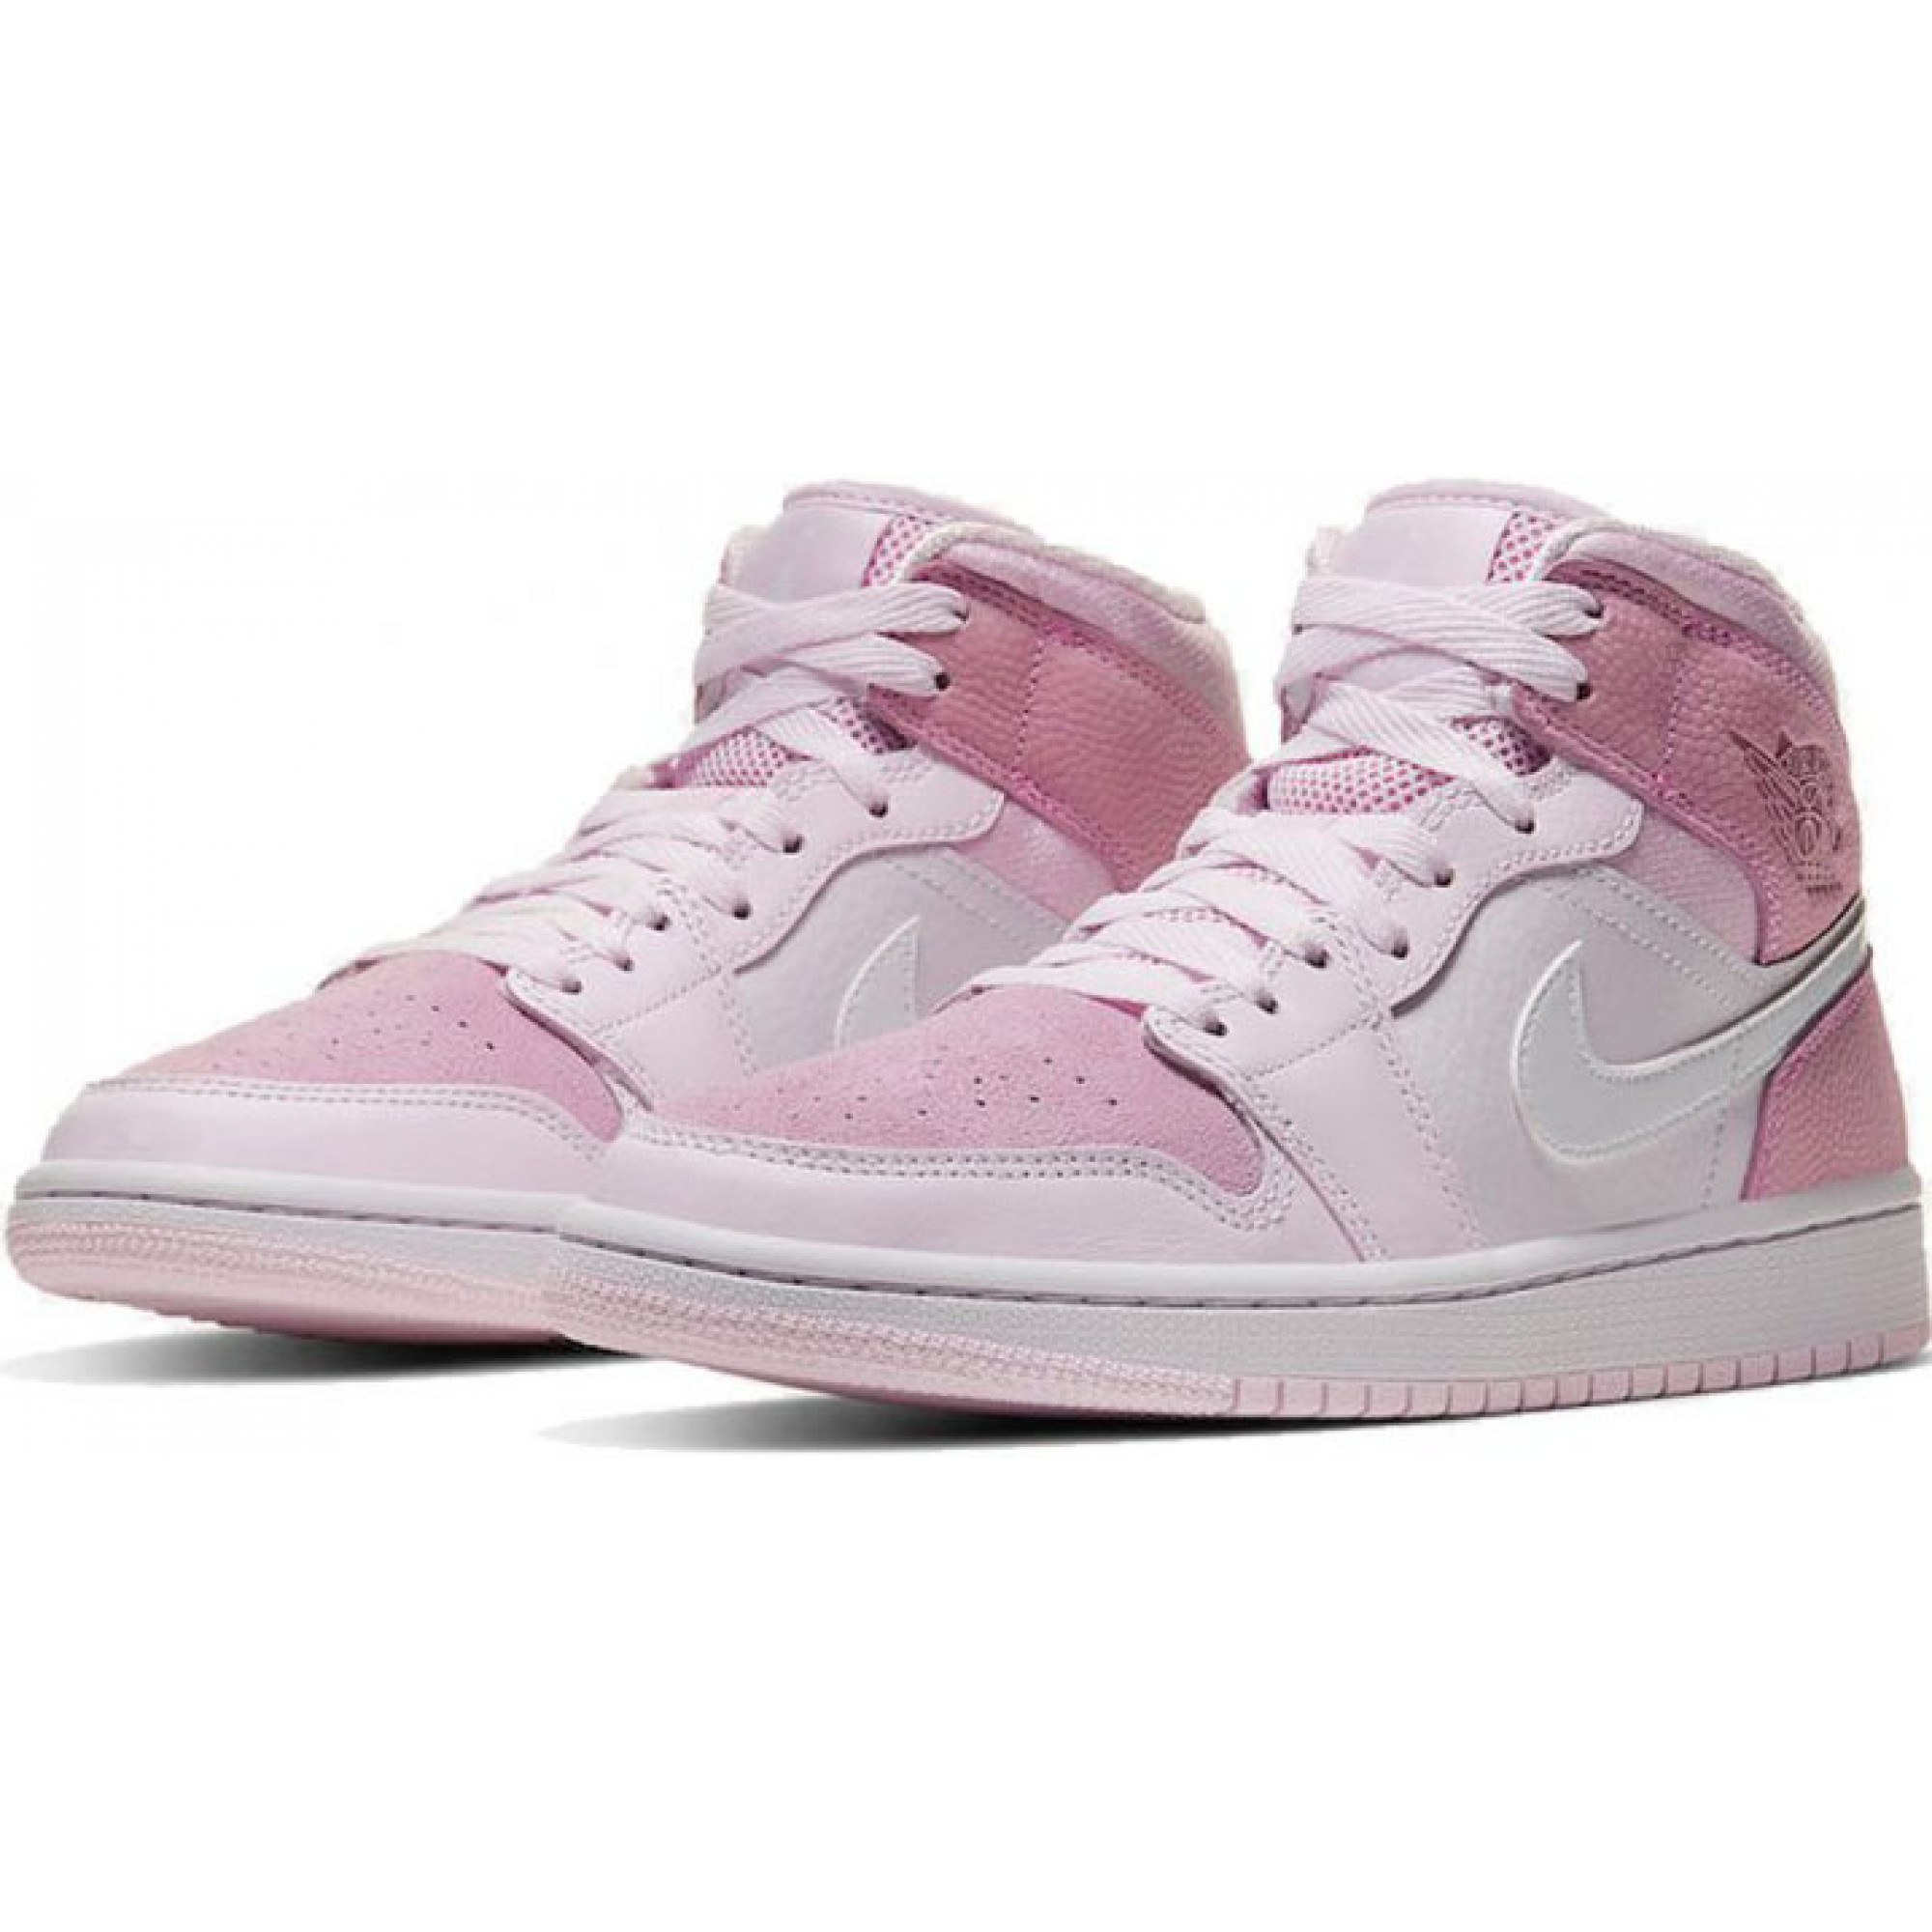 Nike Air Jordan 1 Retro pink 